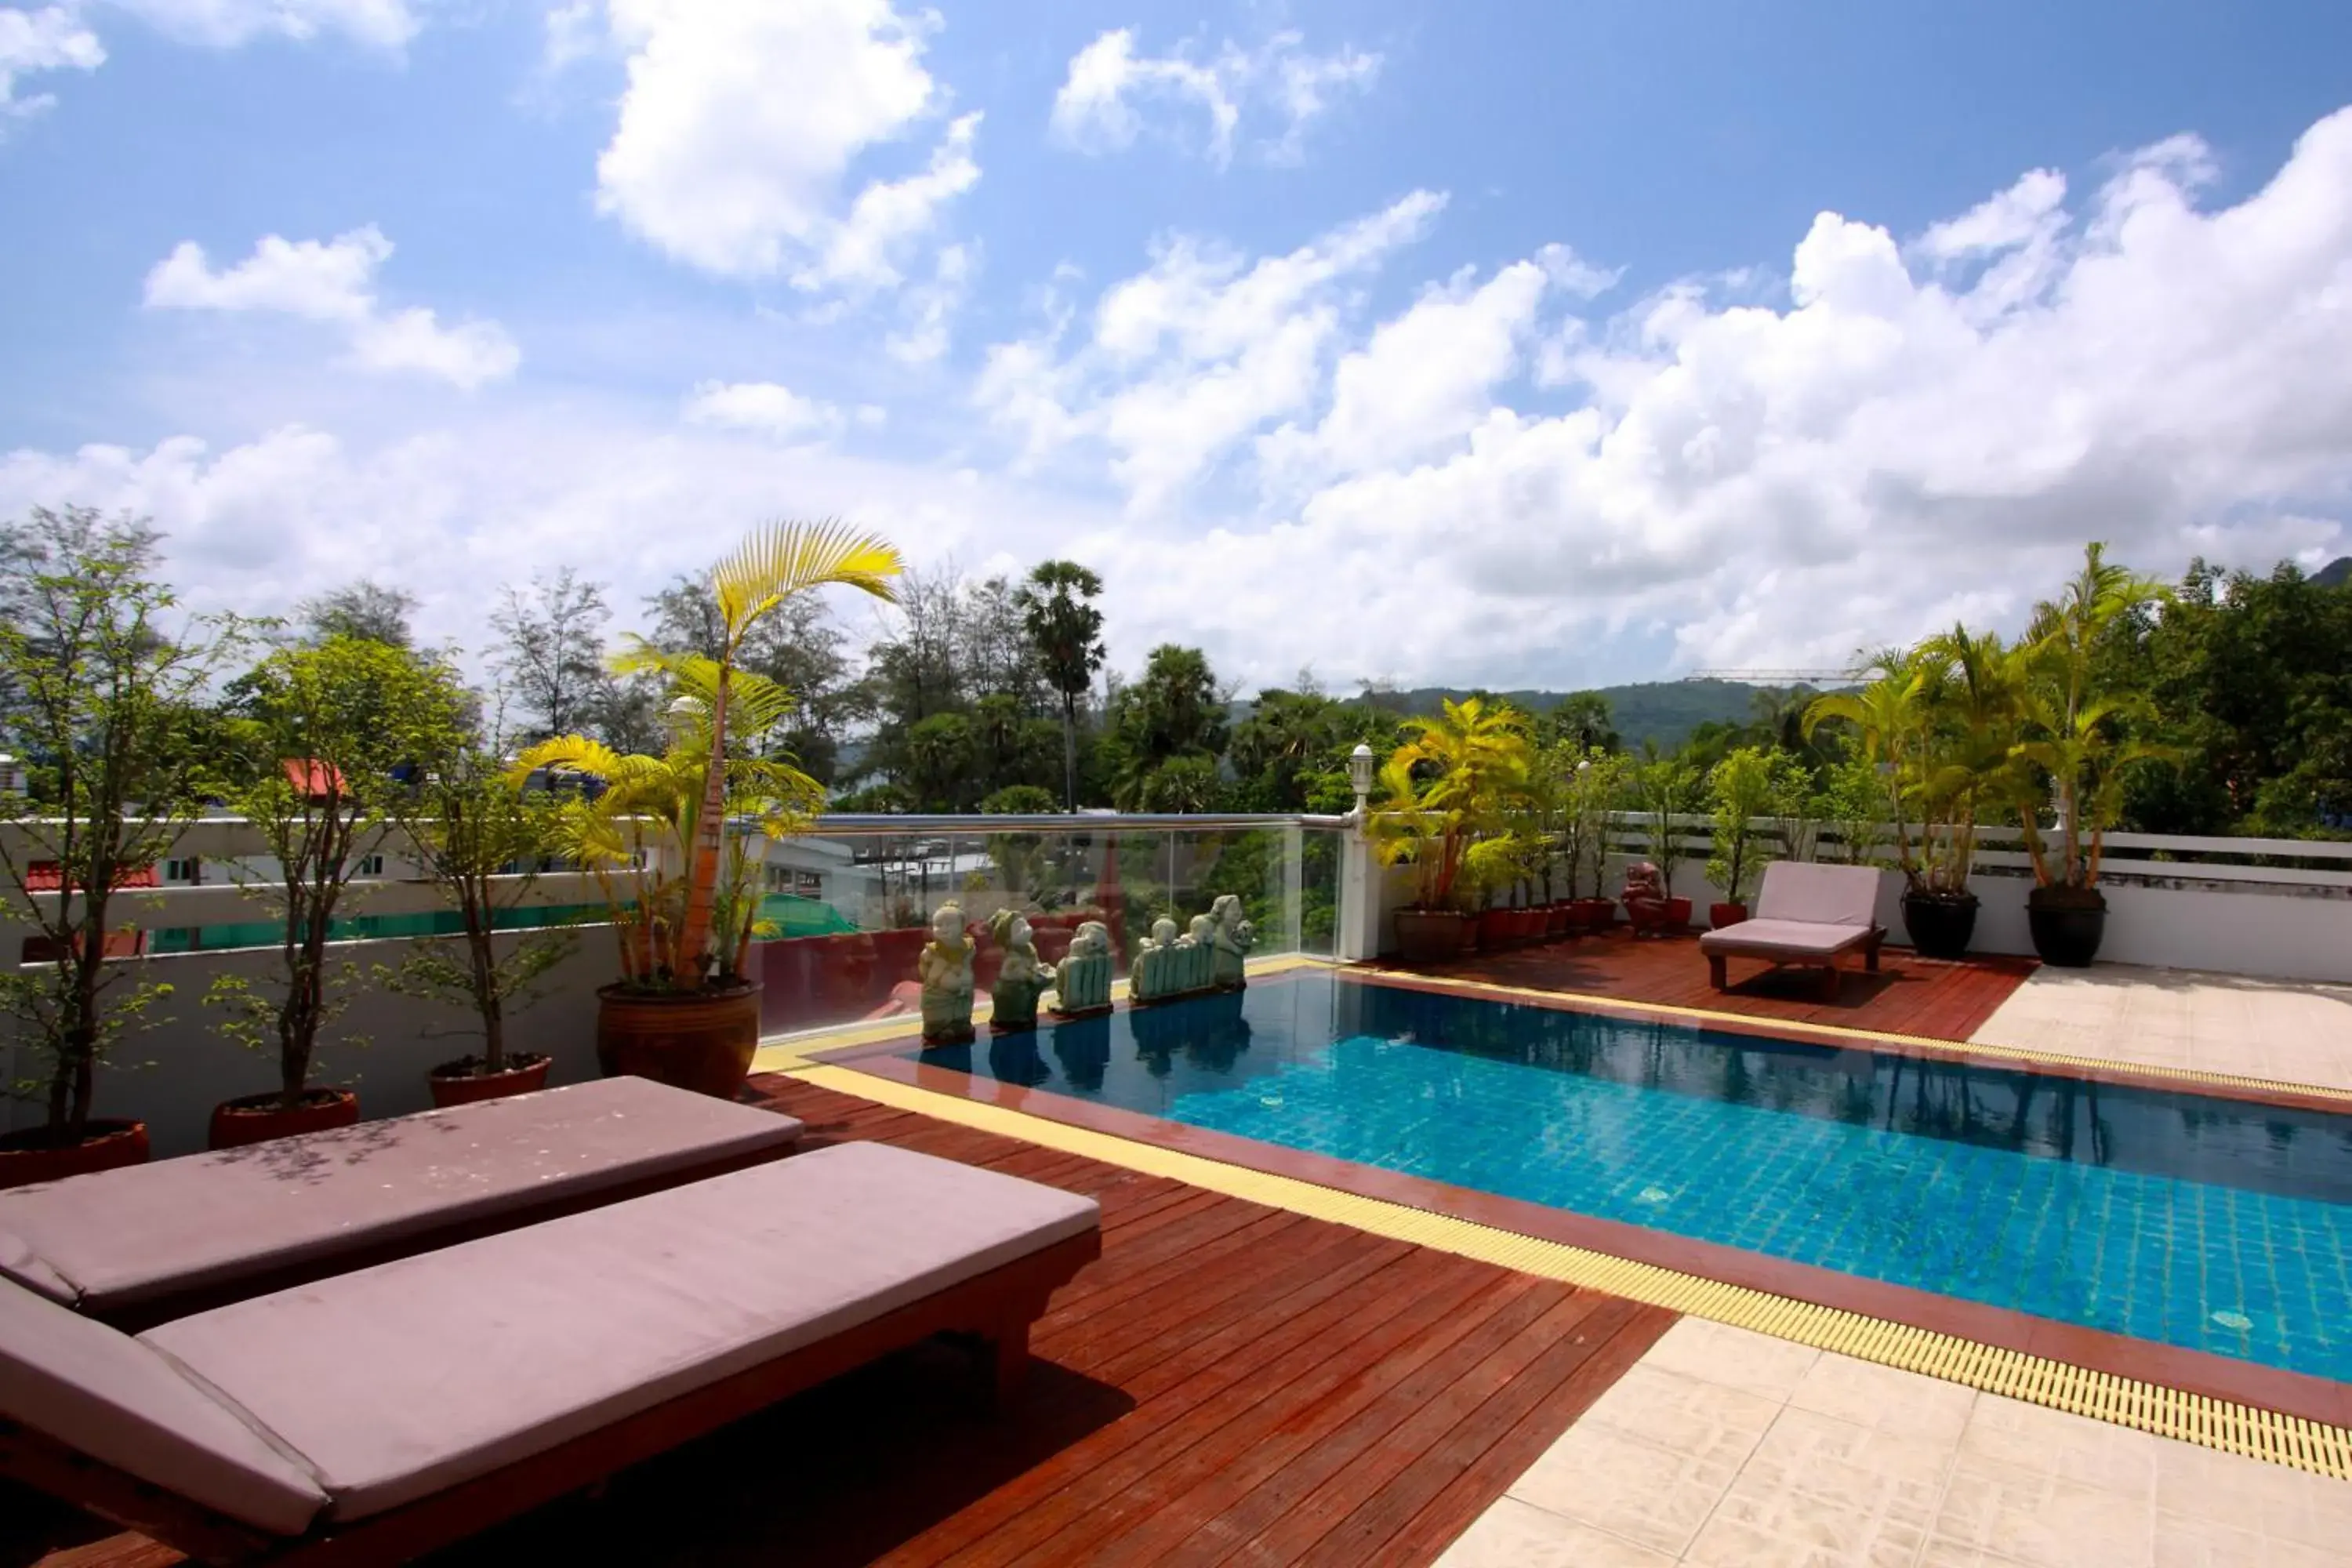 Swimming Pool in Rayaburi Hotel, Patong